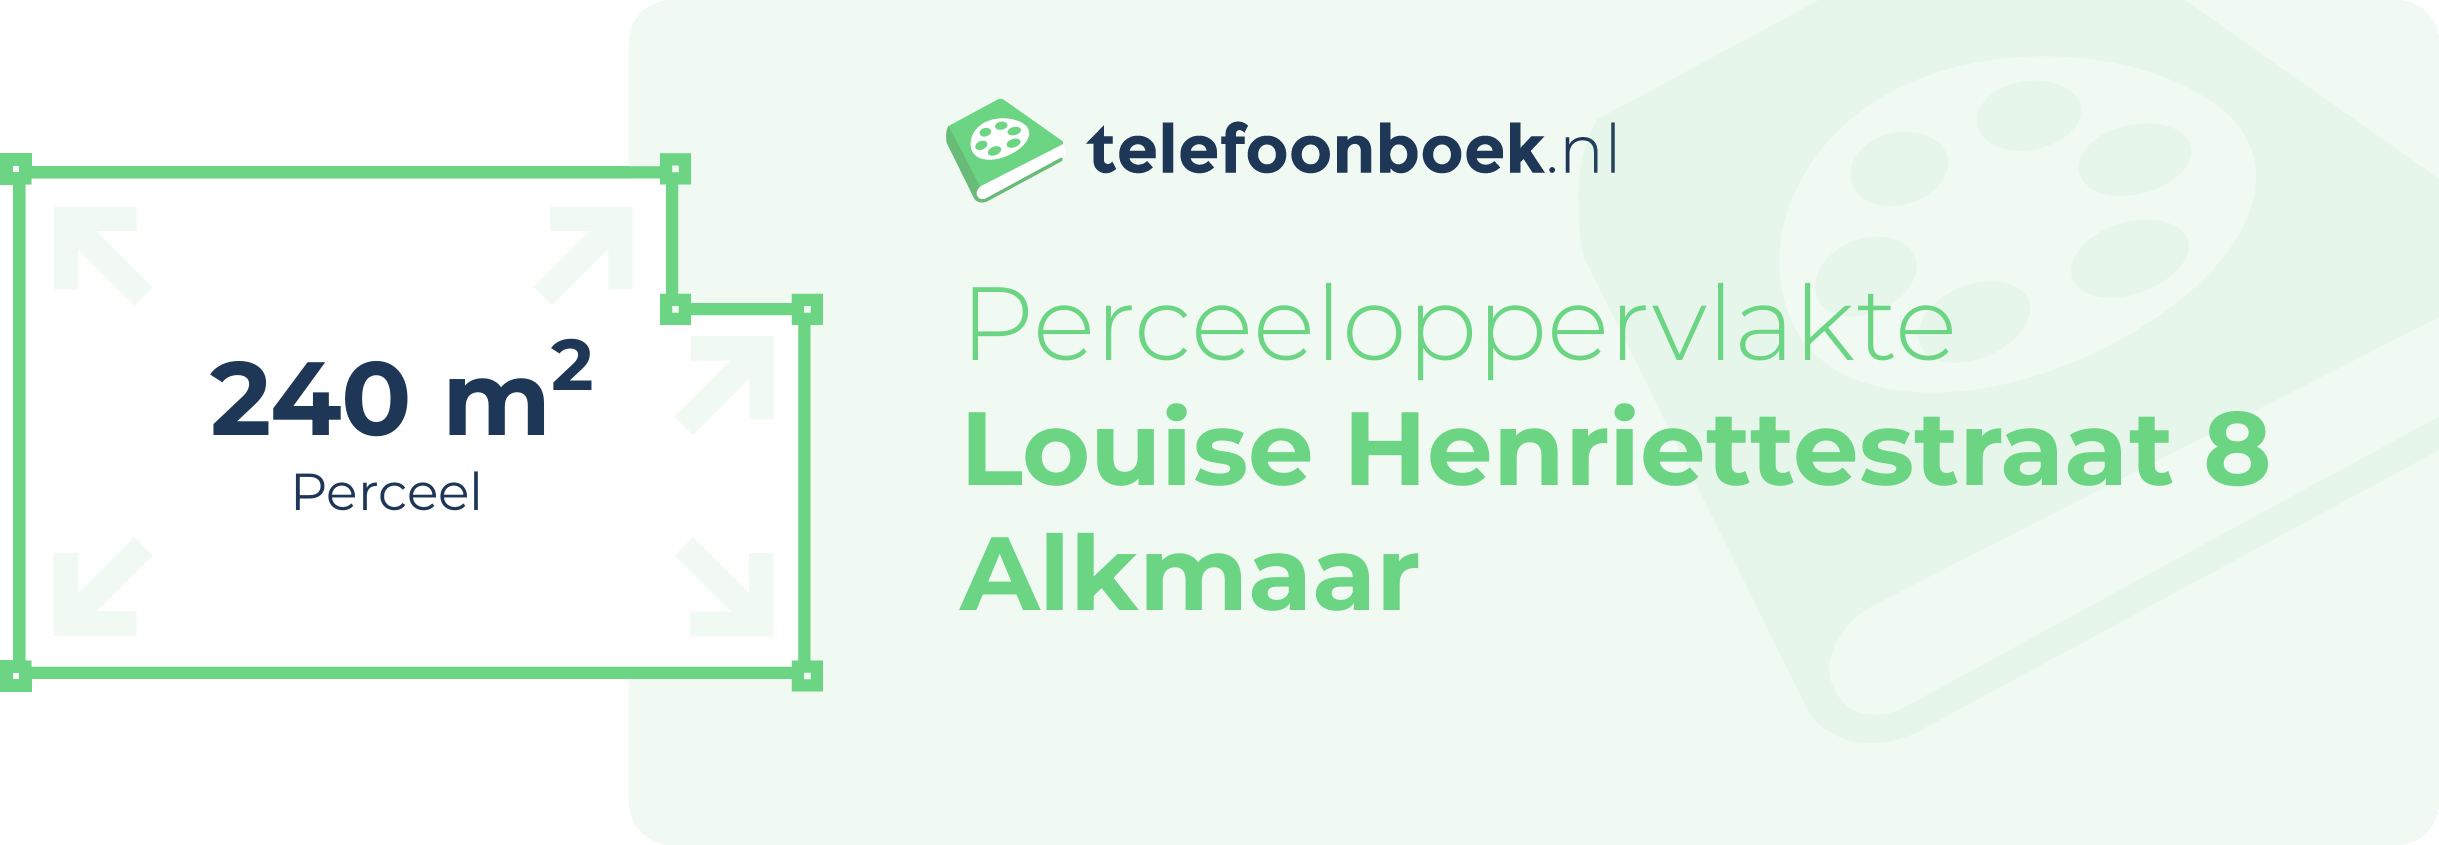 Perceeloppervlakte Louise Henriettestraat 8 Alkmaar